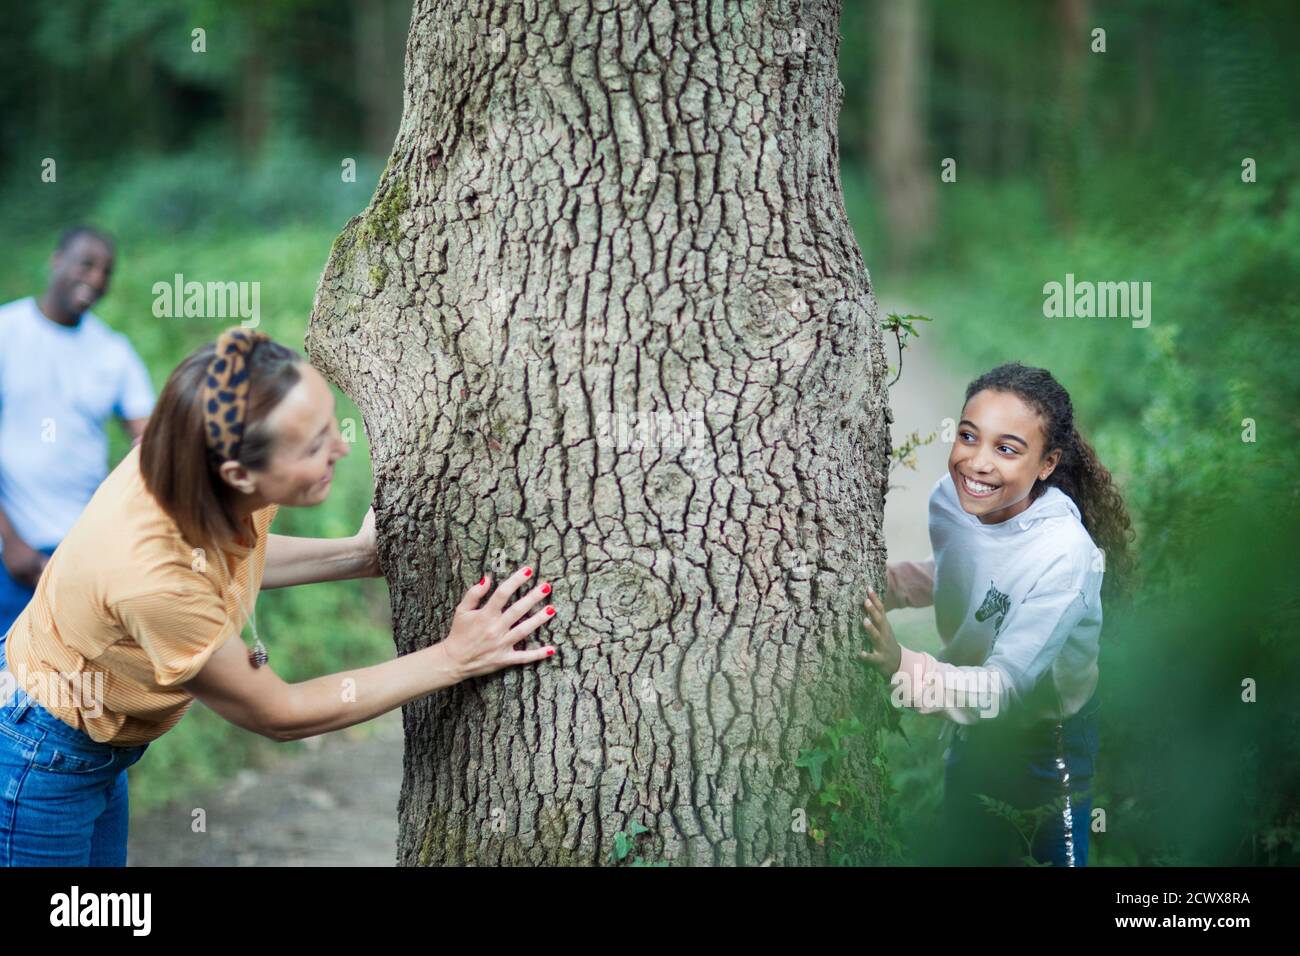 Mère et fille espiègle dans un arbre en bois Banque D'Images